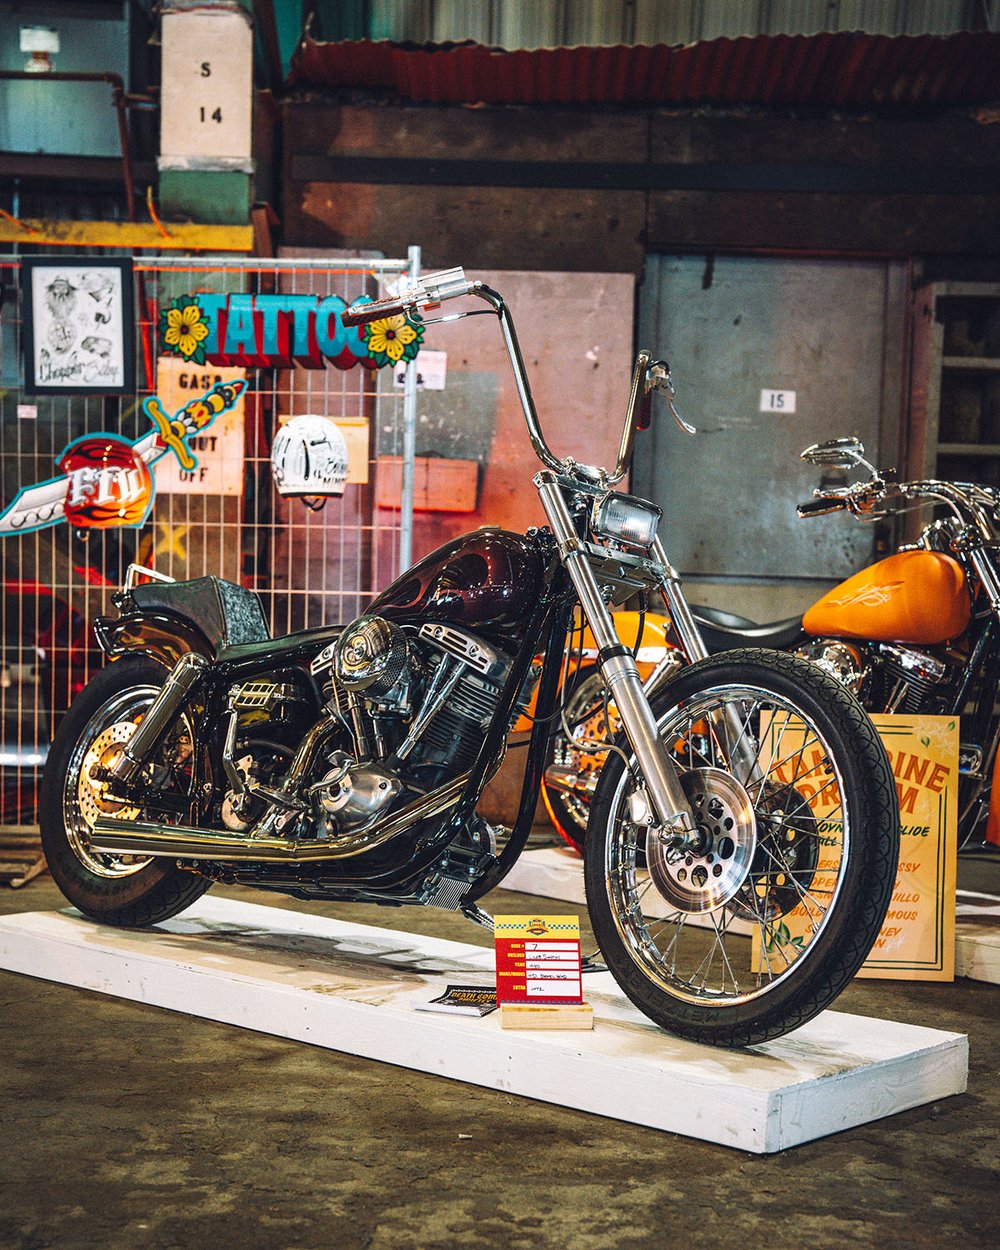 J&amp;P CYCLES CATALOG CUSTOM - Caleb Smythe’s 1980 Harley Davidson Shovelhead